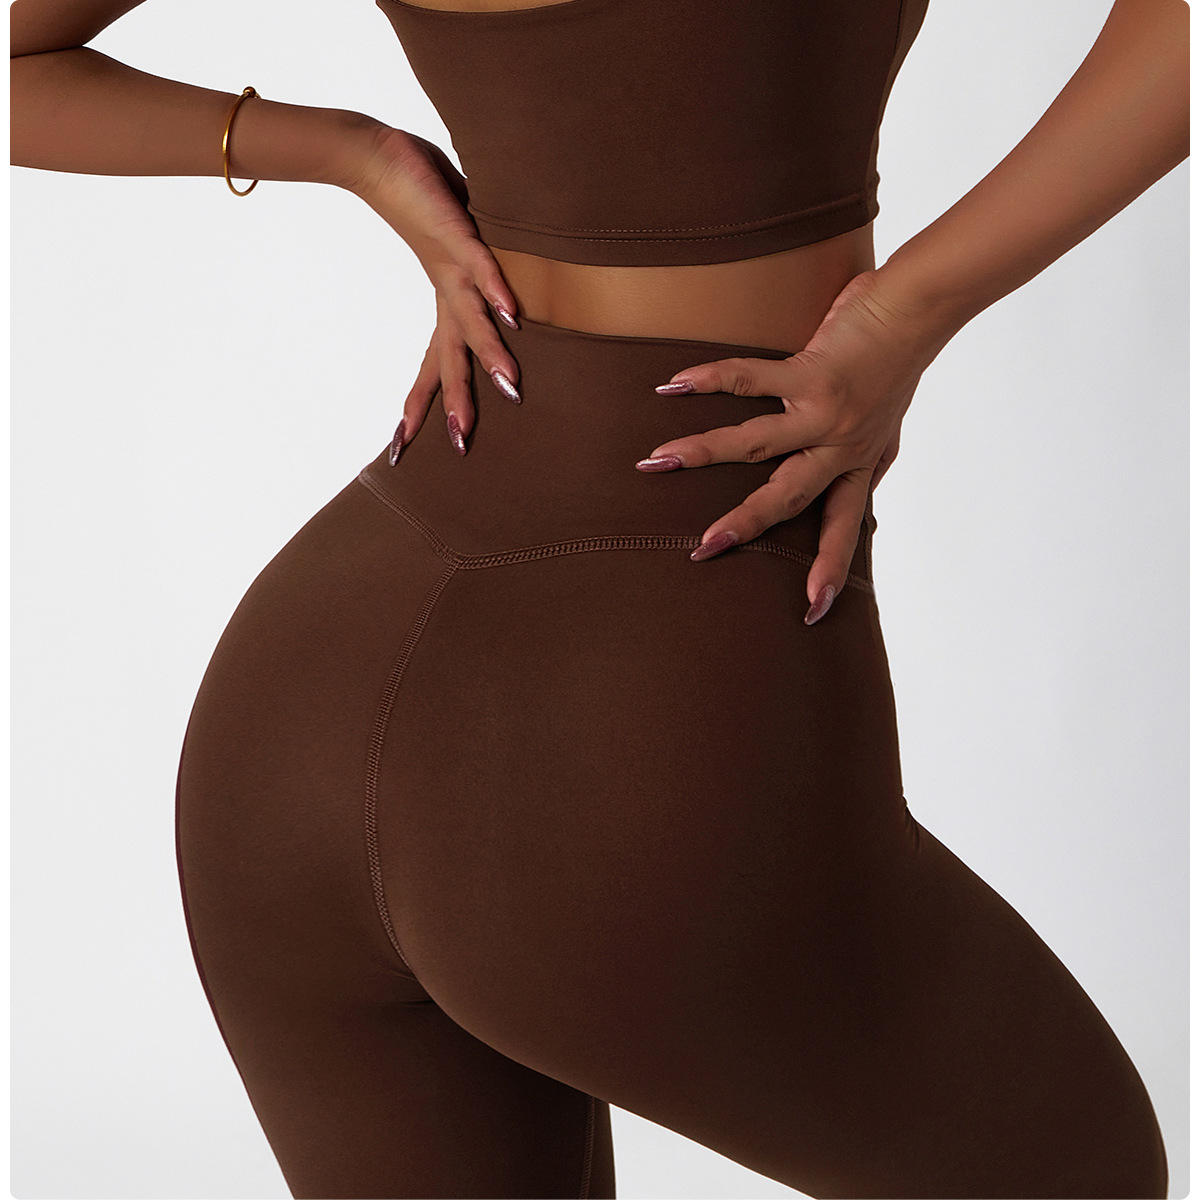 cute workout leggings brown color legging